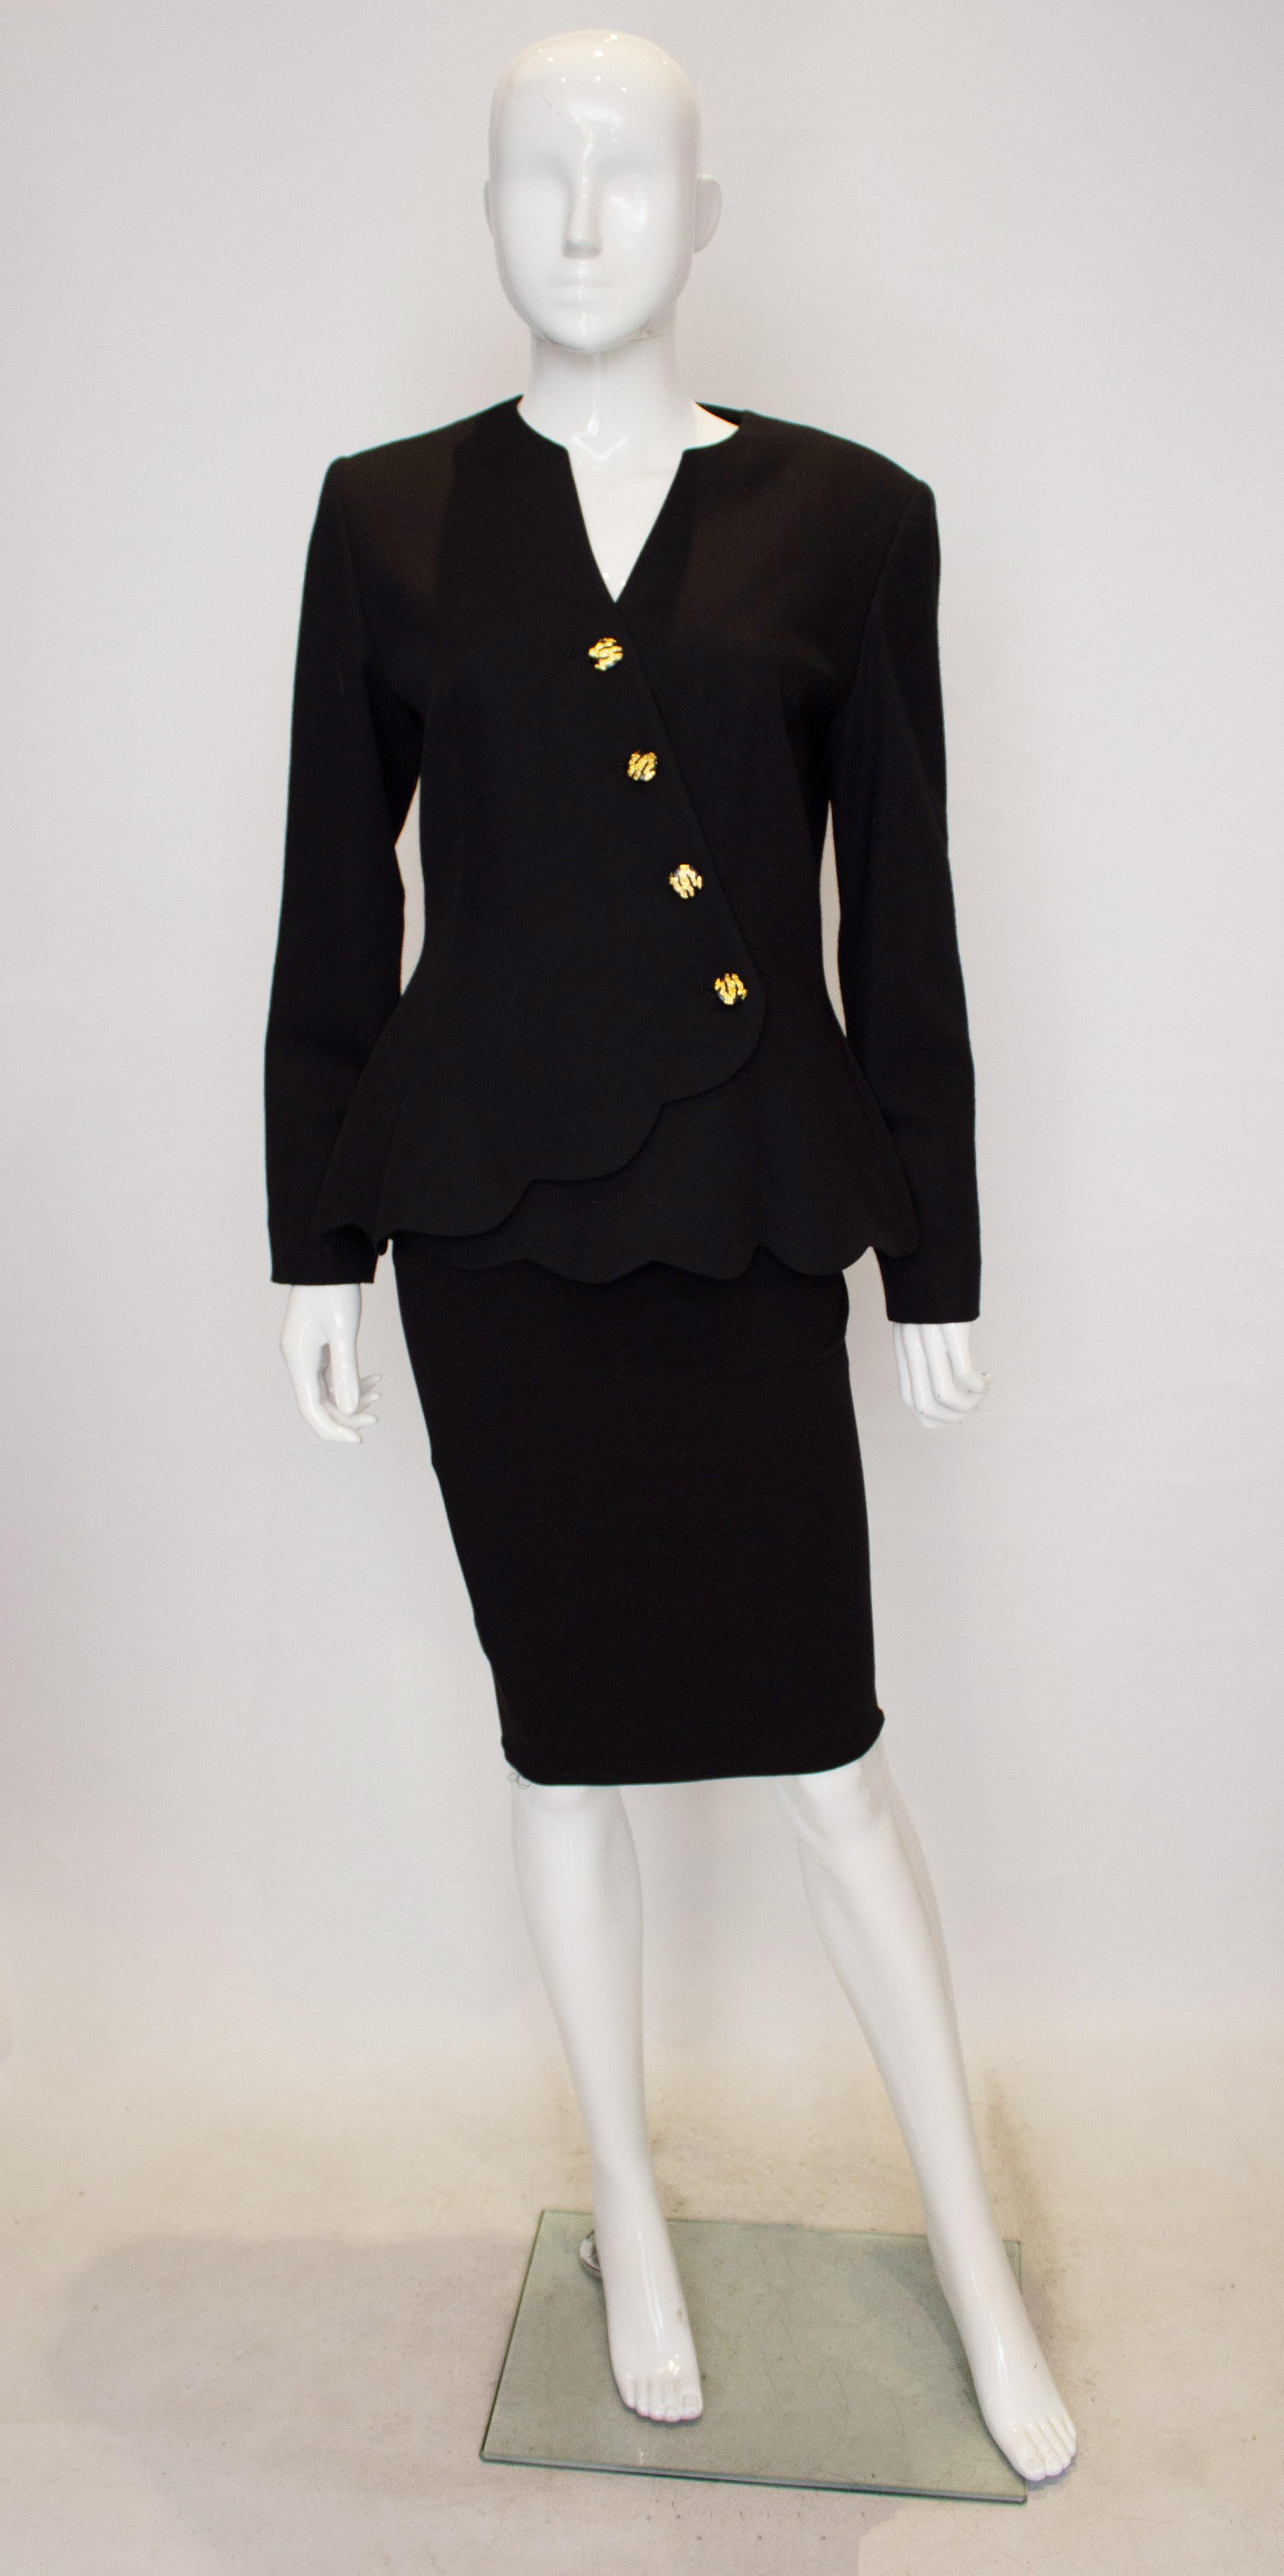 Une veste en laine vintage chic de Peters By. La veste présente une magnifique encolure avec une fermeture en diagonale avec des boutons dorés et bleu marine/noir. Il présente un ourlet festonné et est entièrement doublé. 